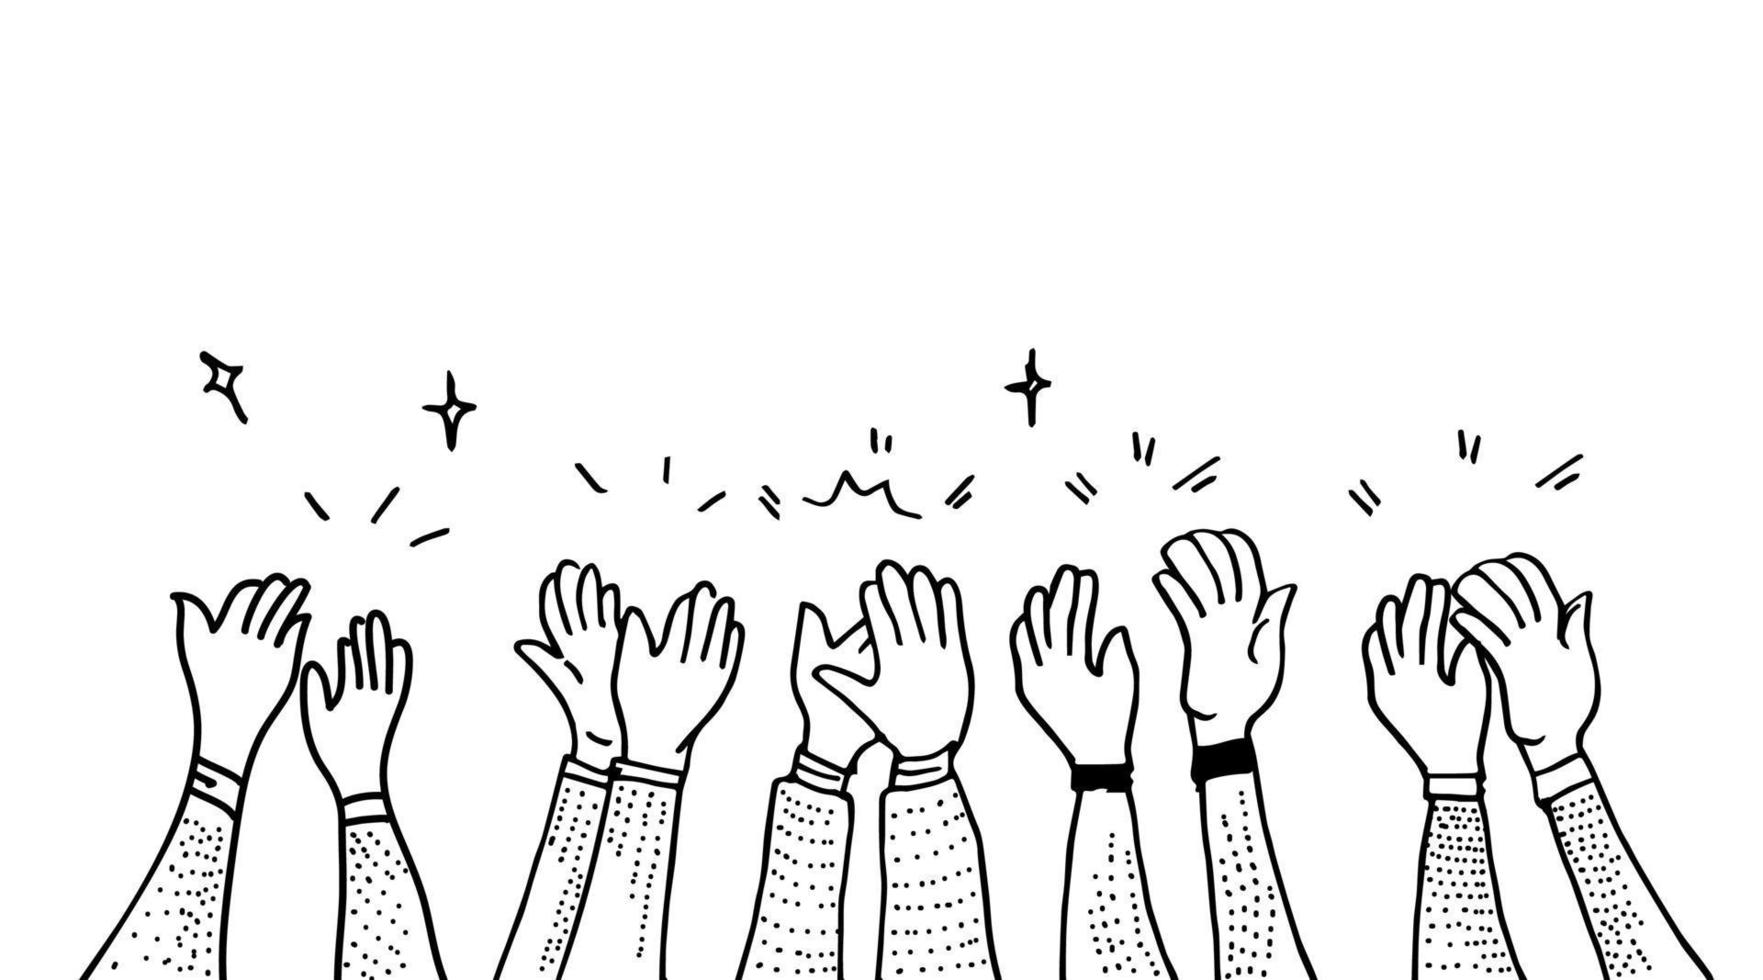 disegnato a mano di mani che applaudono l'ovazione. applausi, pollice in alto gesto su stile doodle, illustrazione vettoriale